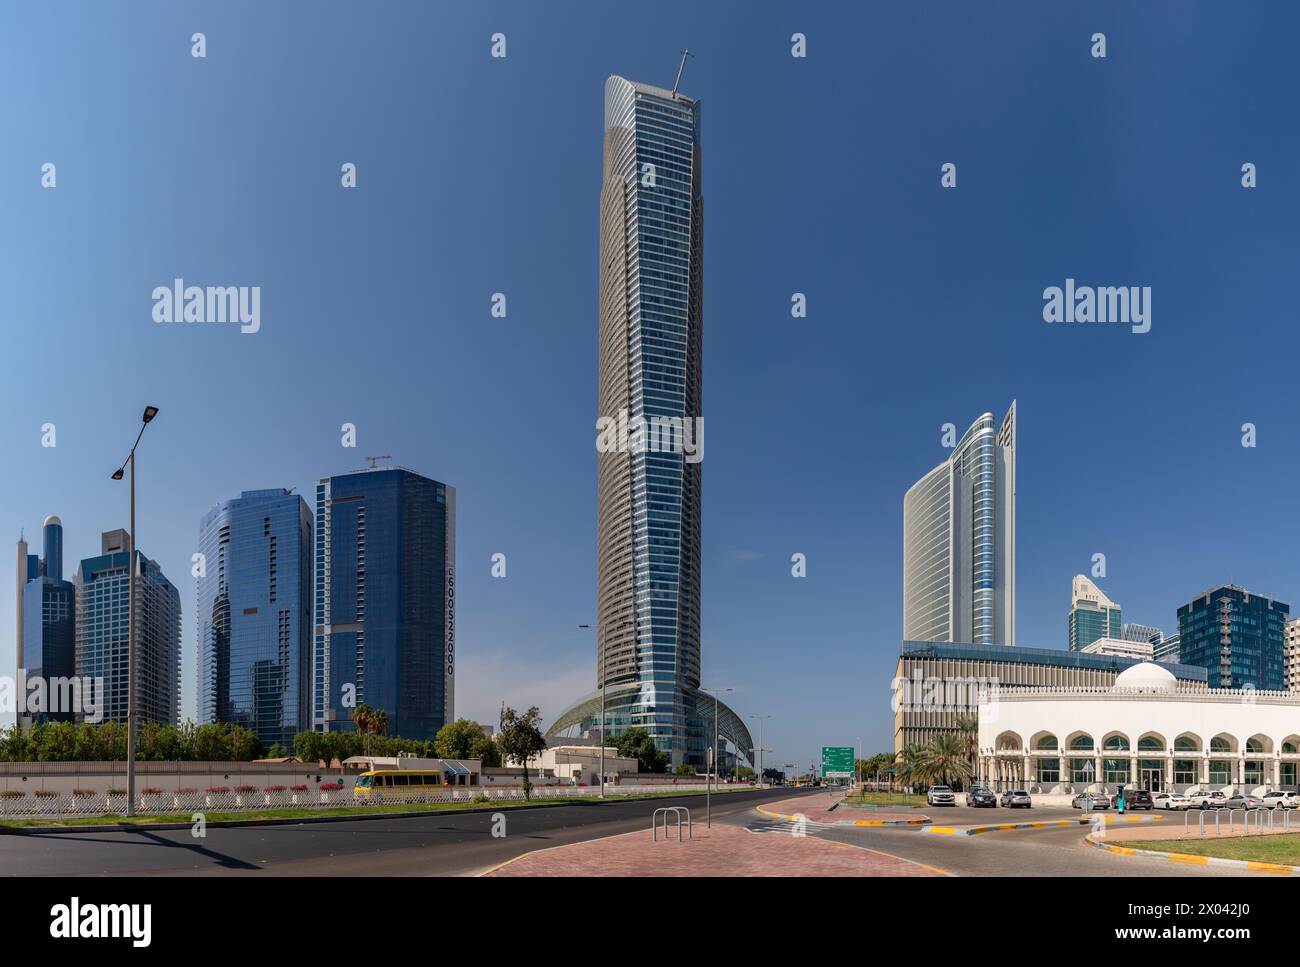 Une photo de la tour Landmark et des bâtiments voisins du quartier Al Markaziyah West, à Abu Dhabi. Banque D'Images